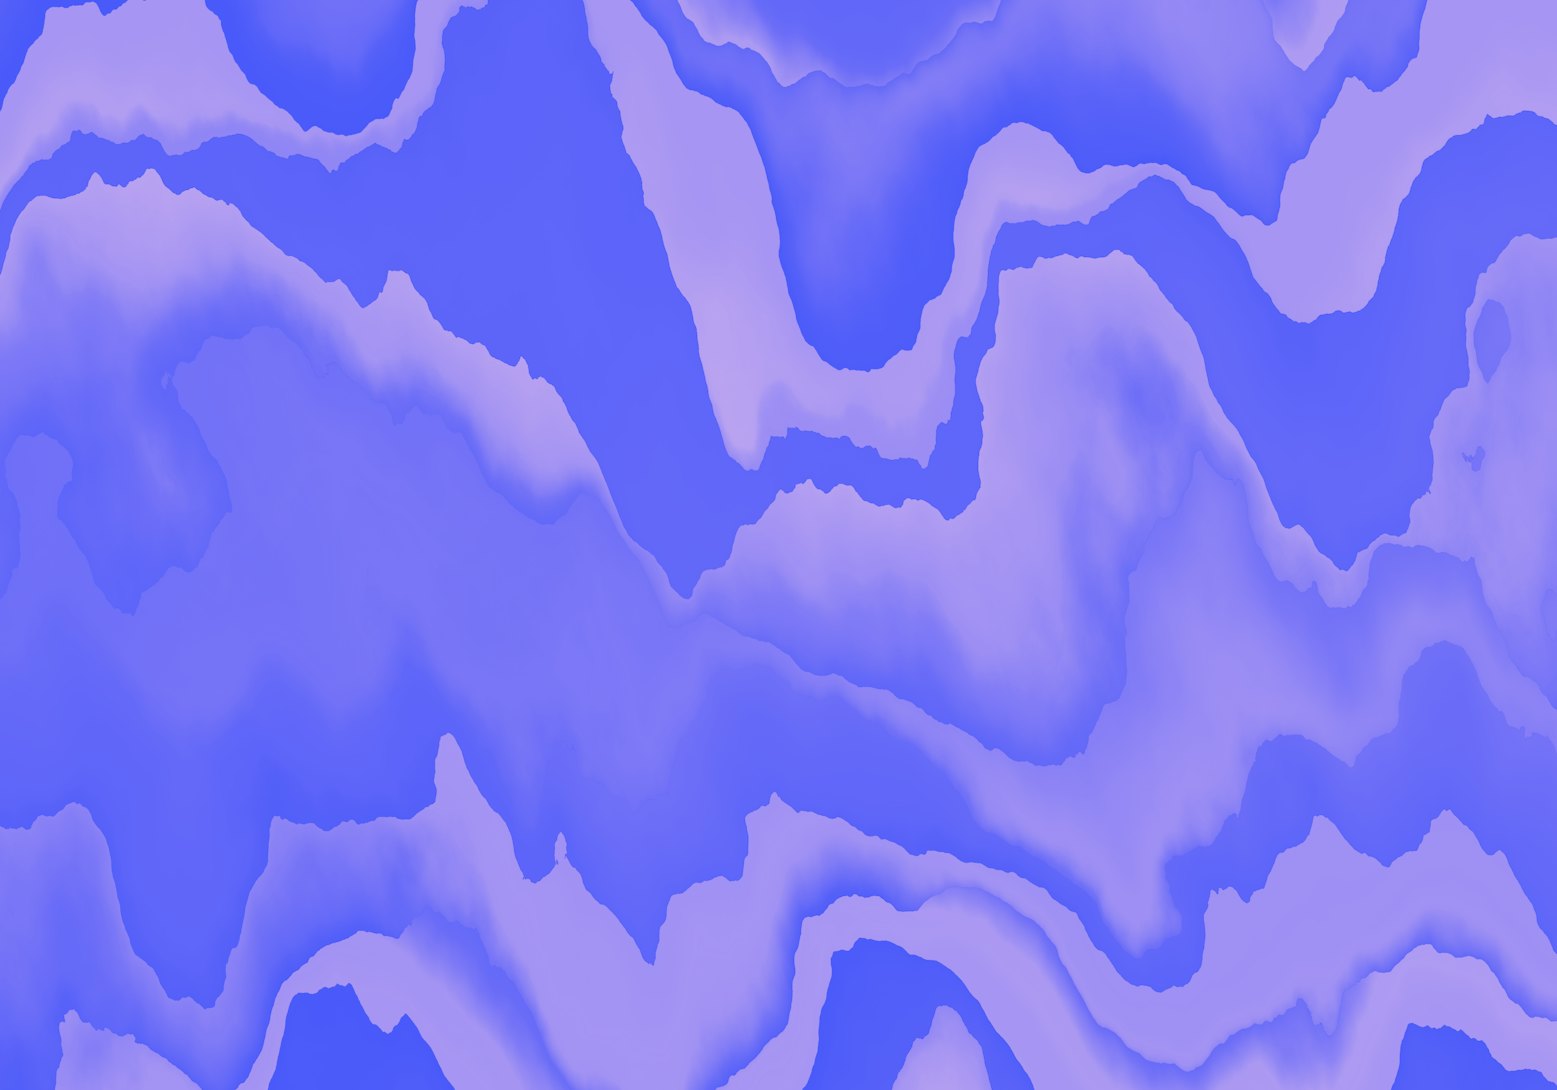 Mountainous terrain, distorted wave illustration